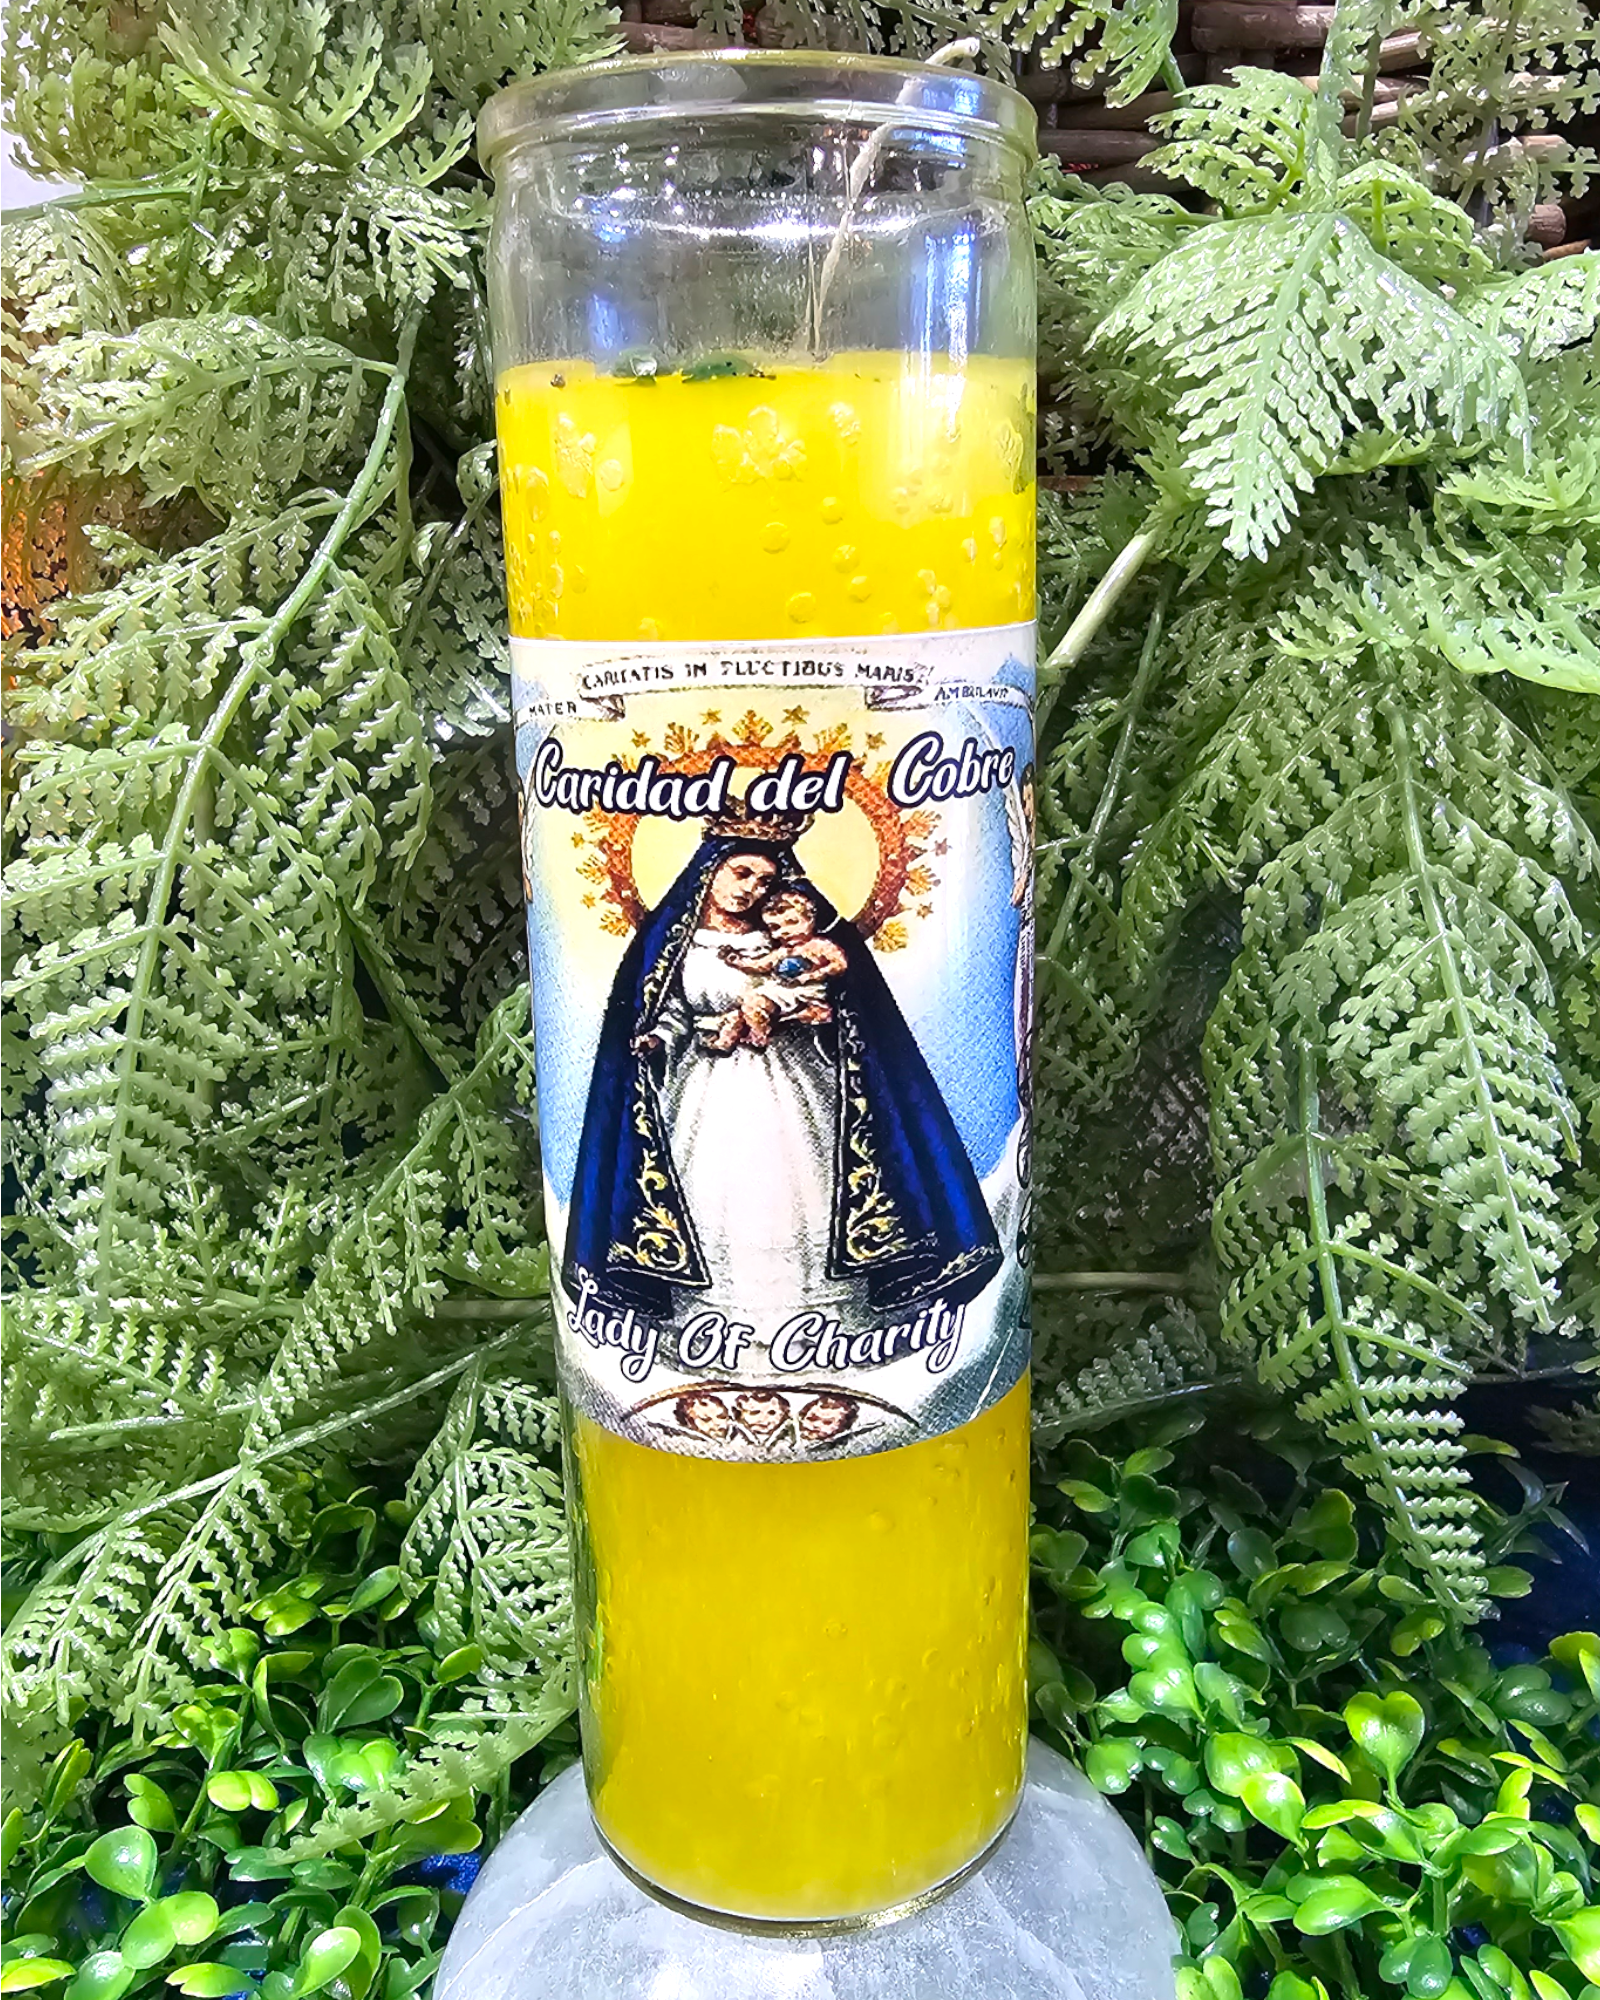 Lady of charity ( Caridad del Cobre) Candle